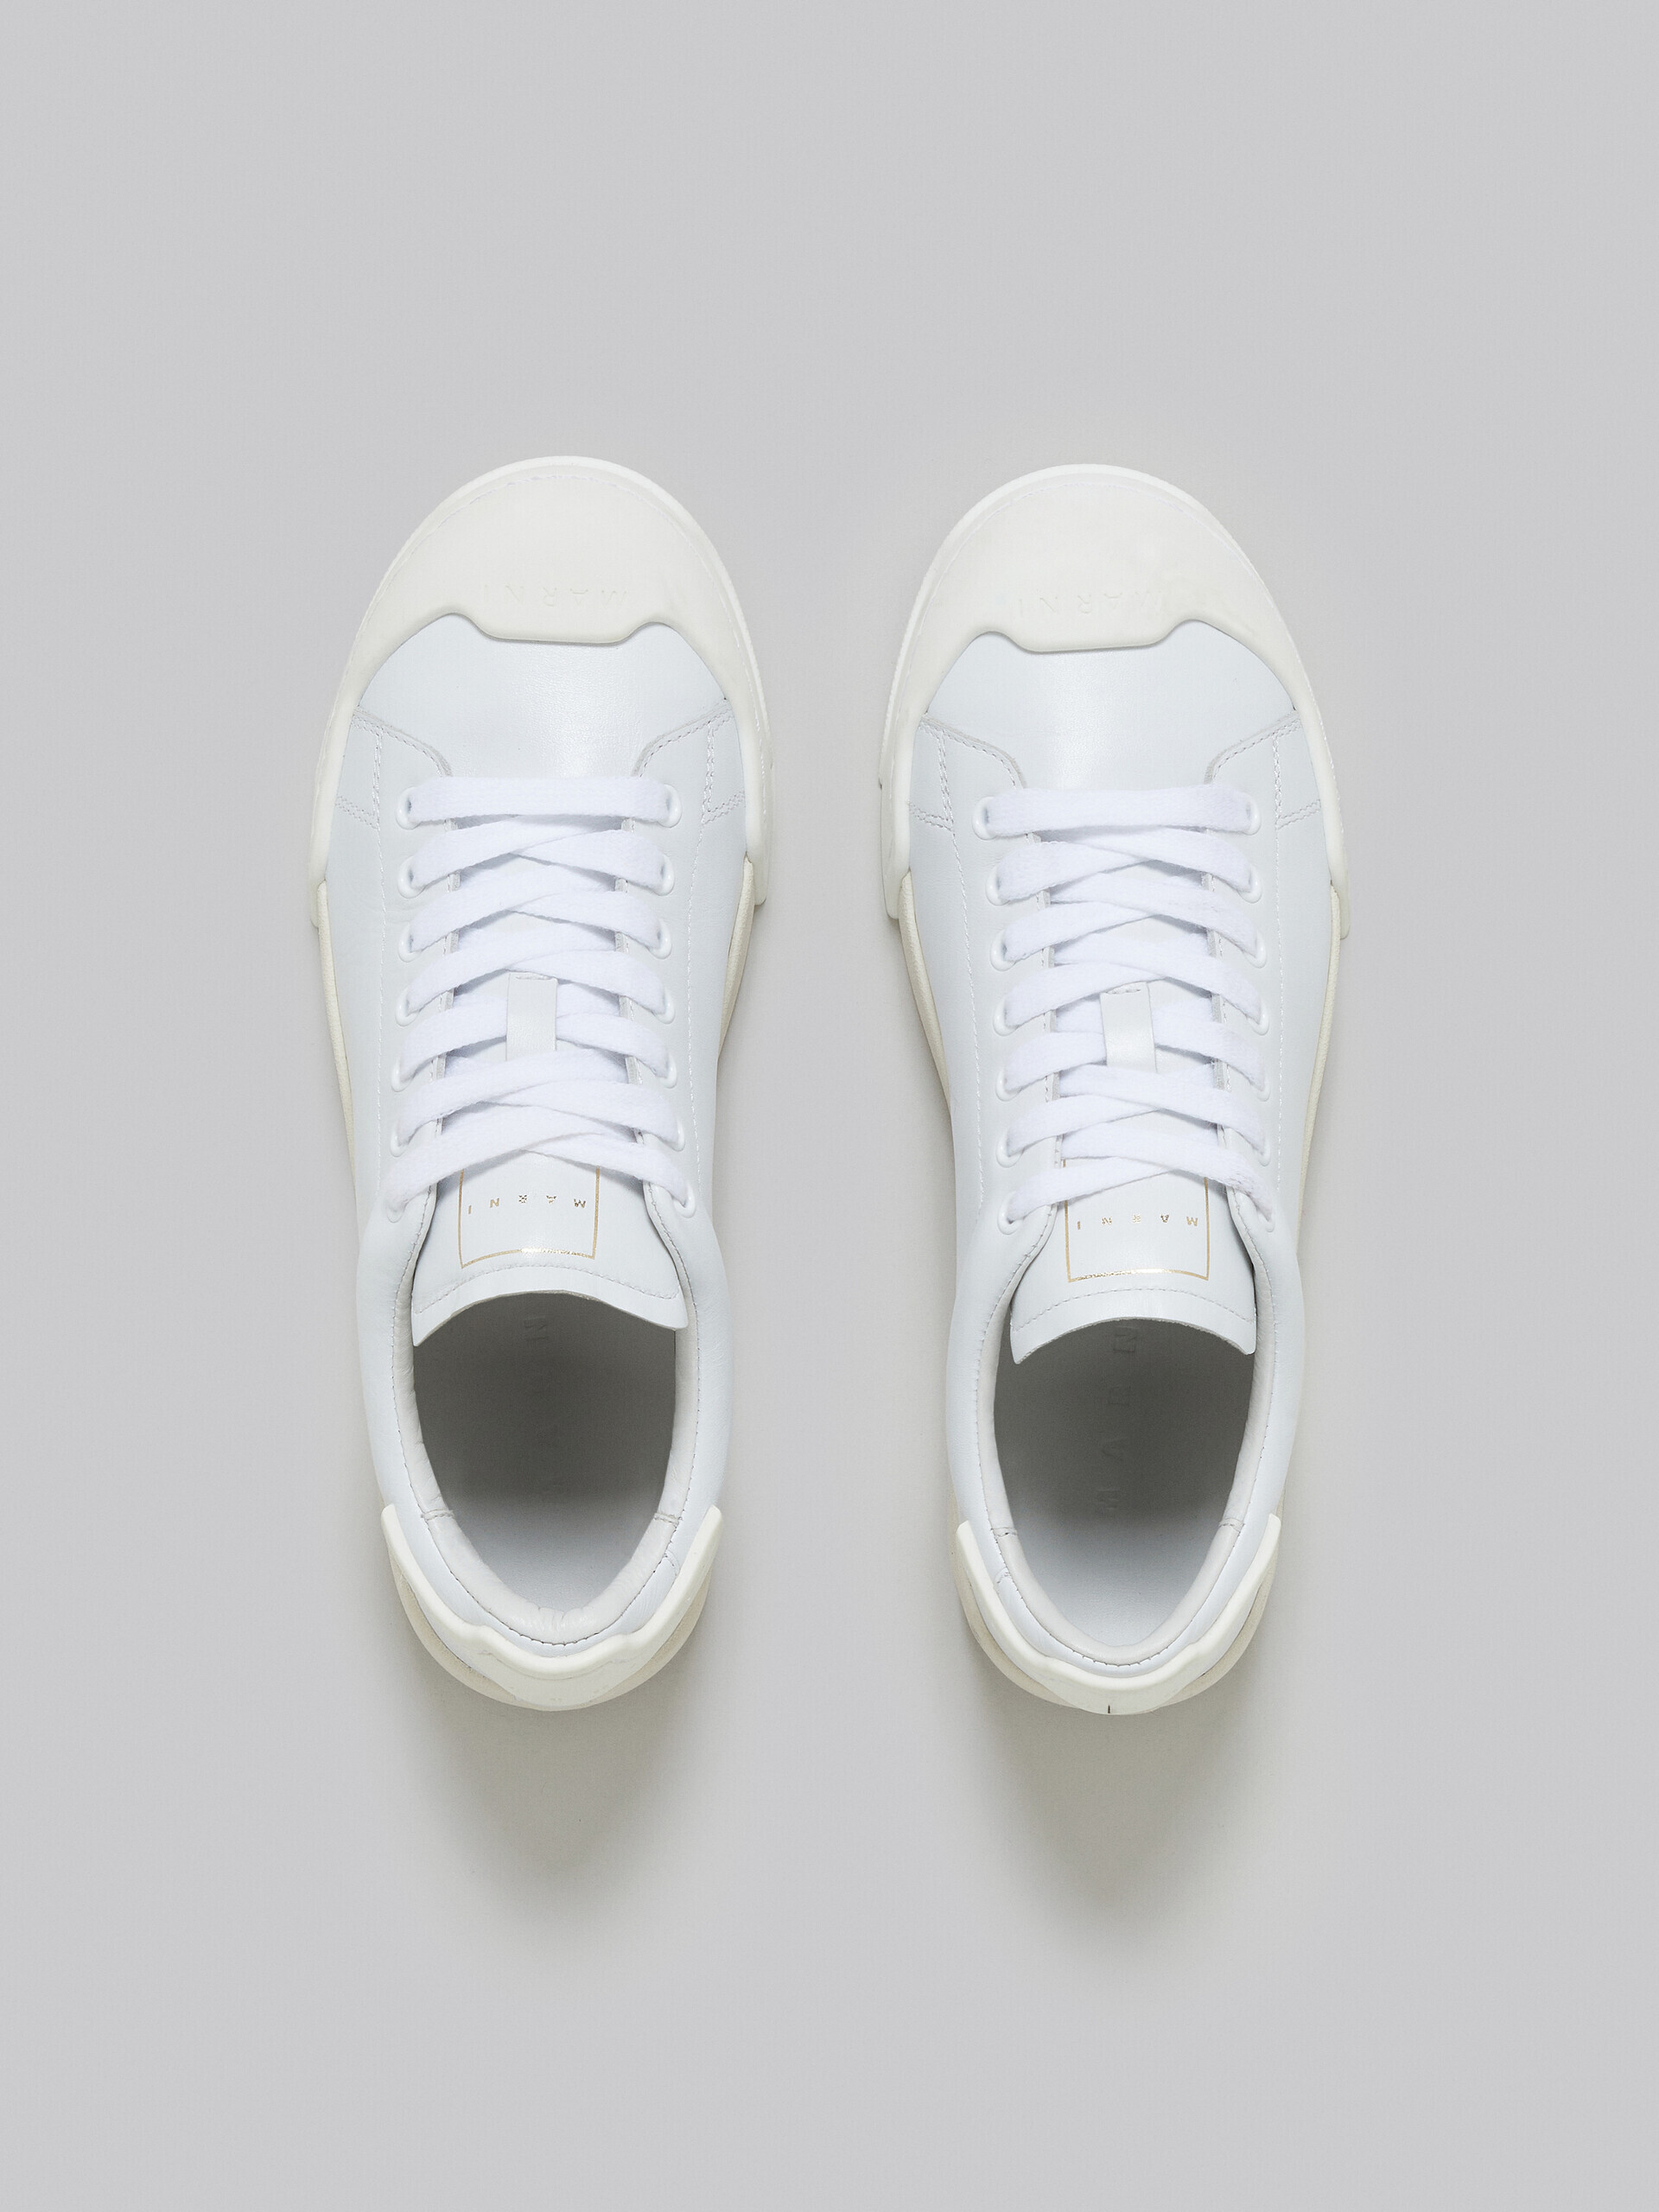 Zapatilla Dada Bumper de piel totalmente blanca - Sneakers - Image 4